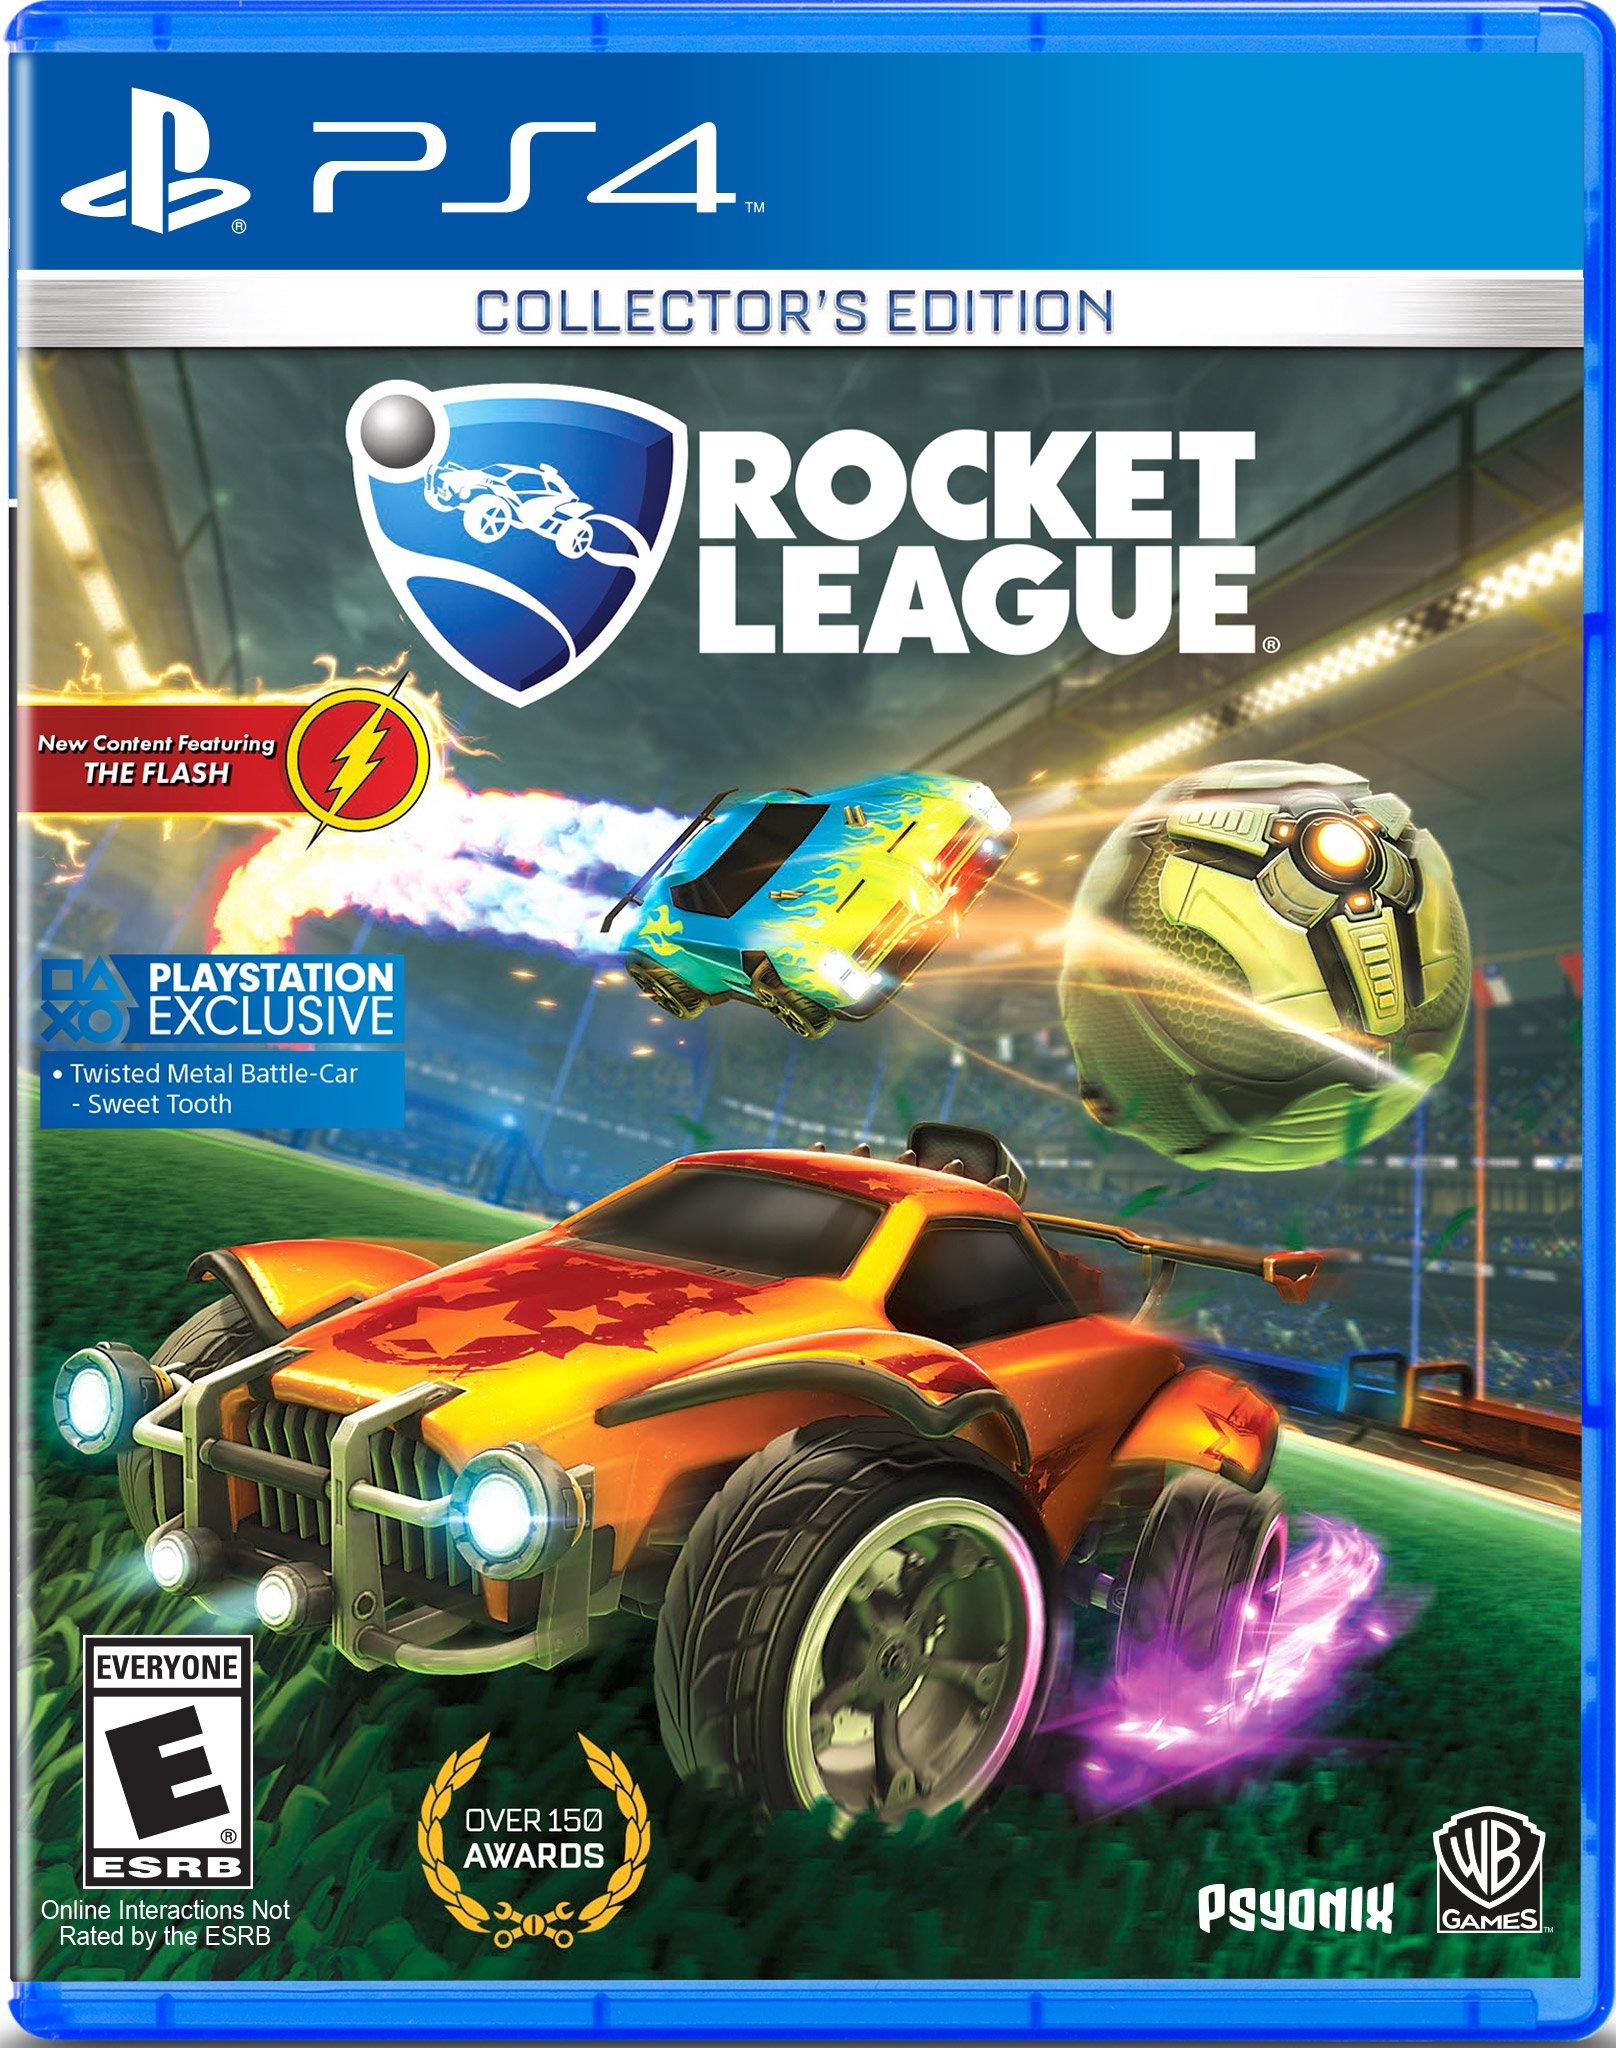 Rocket League Collector's Edition - PlayStation 4 | PlayStation GameStop